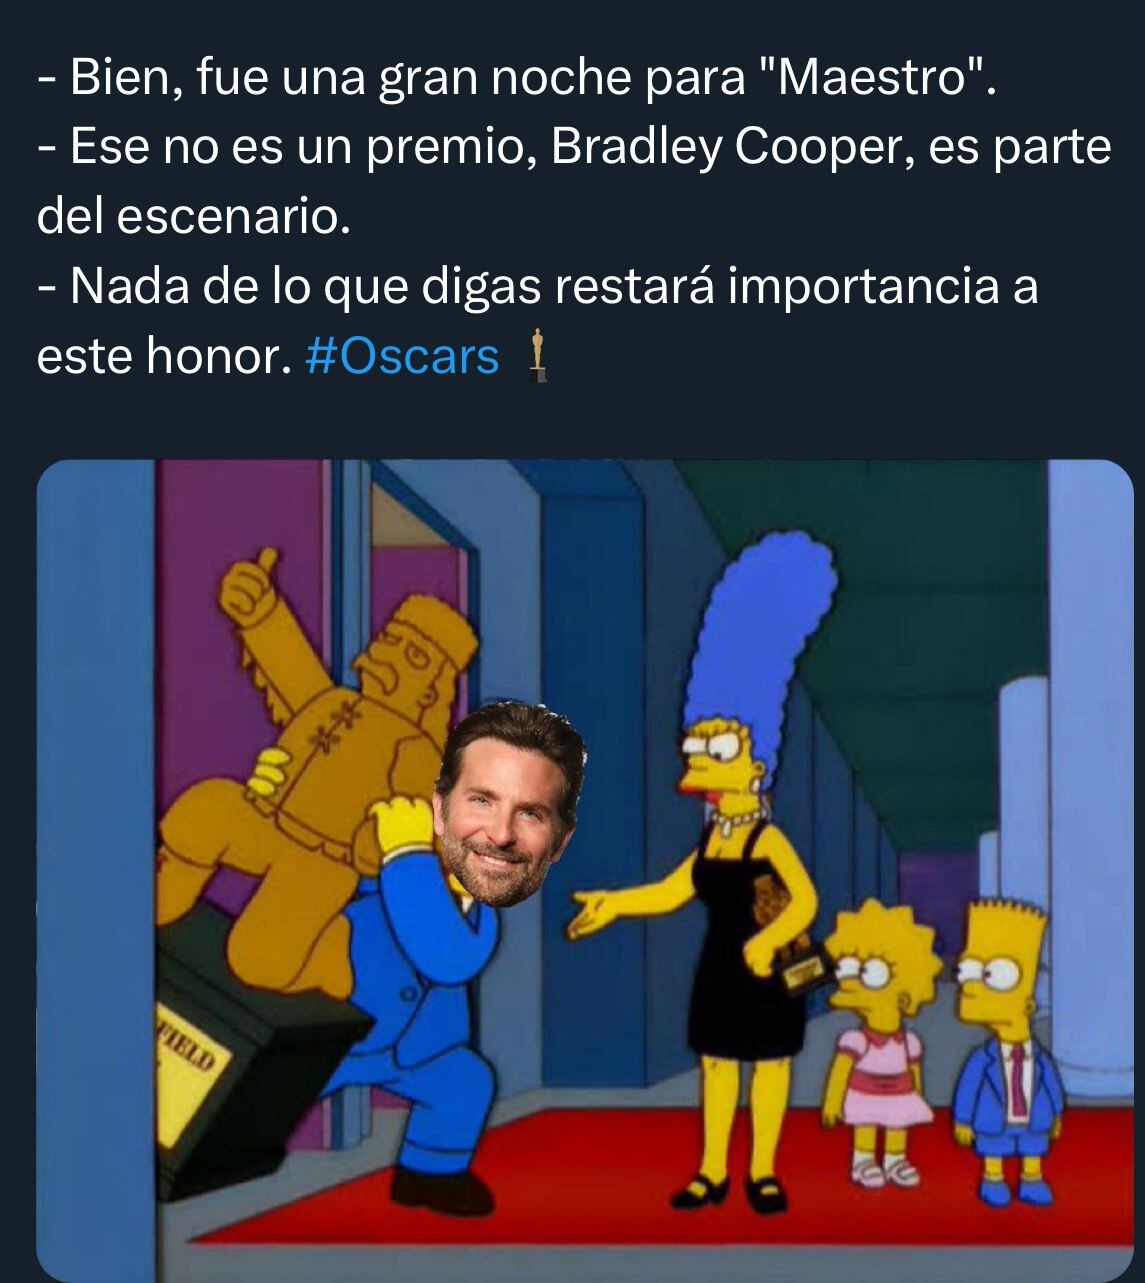 Algunos memes se burlaron de 'Maestro' de Bradley Cooper. (Foto: X / @SoySimpsonito)